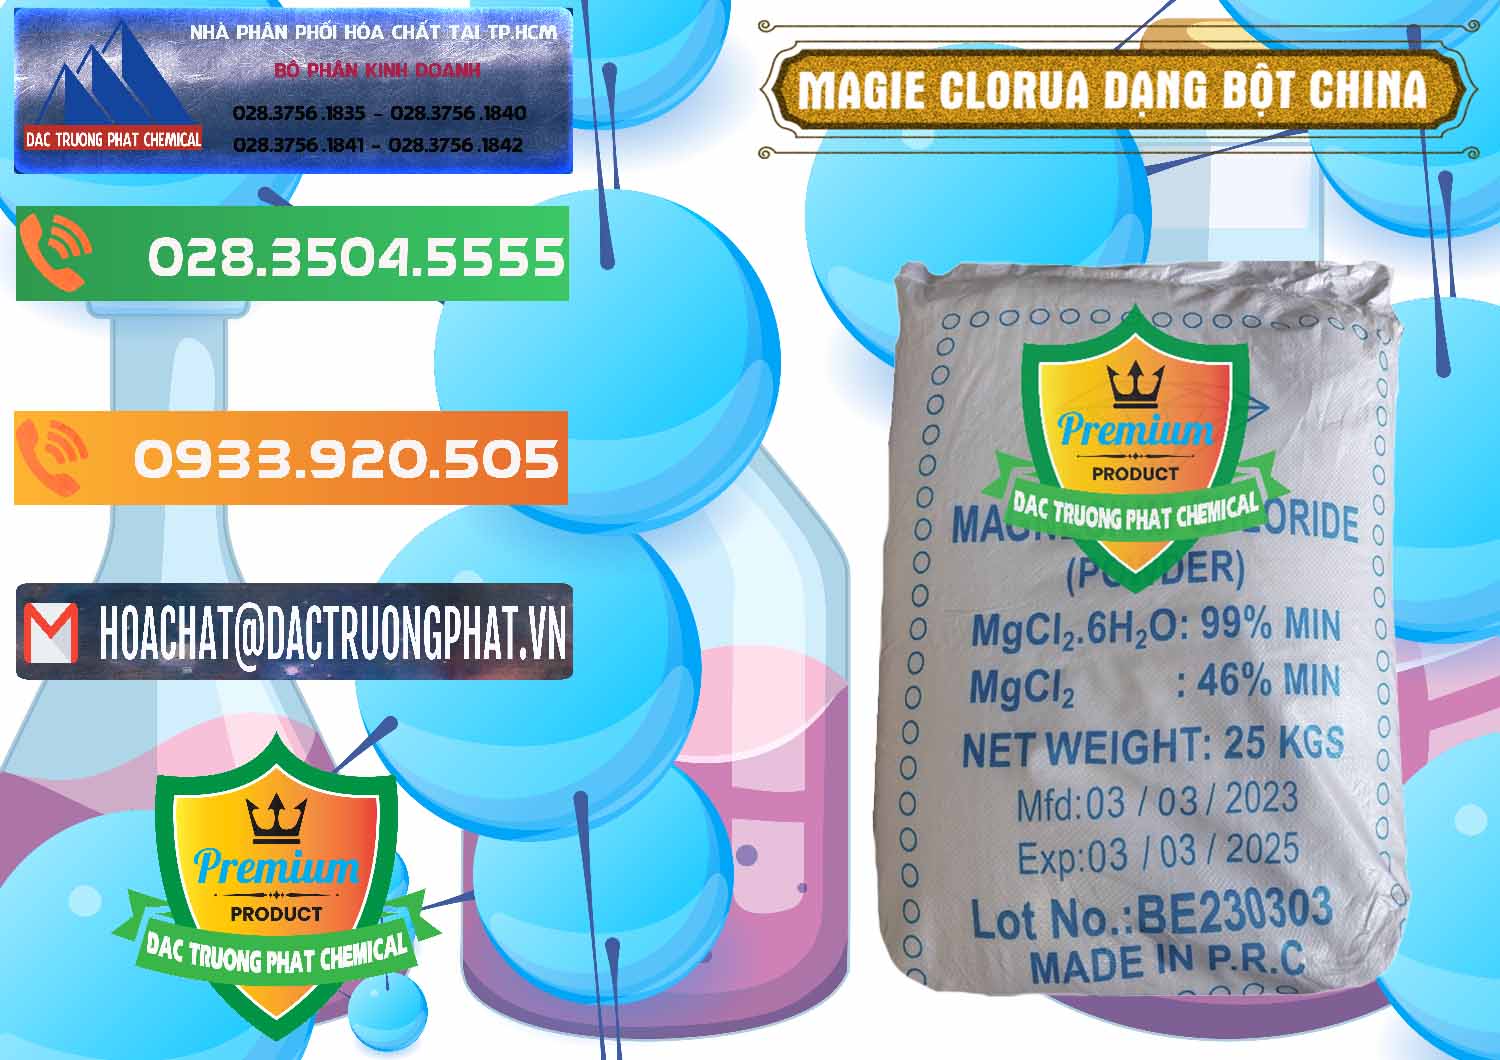 Cty chuyên kinh doanh - bán Magie Clorua – MGCL2 96% Dạng Bột Logo Kim Cương Trung Quốc China - 0387 - Công ty chuyên phân phối và nhập khẩu hóa chất tại TP.HCM - hoachatxulynuoc.com.vn